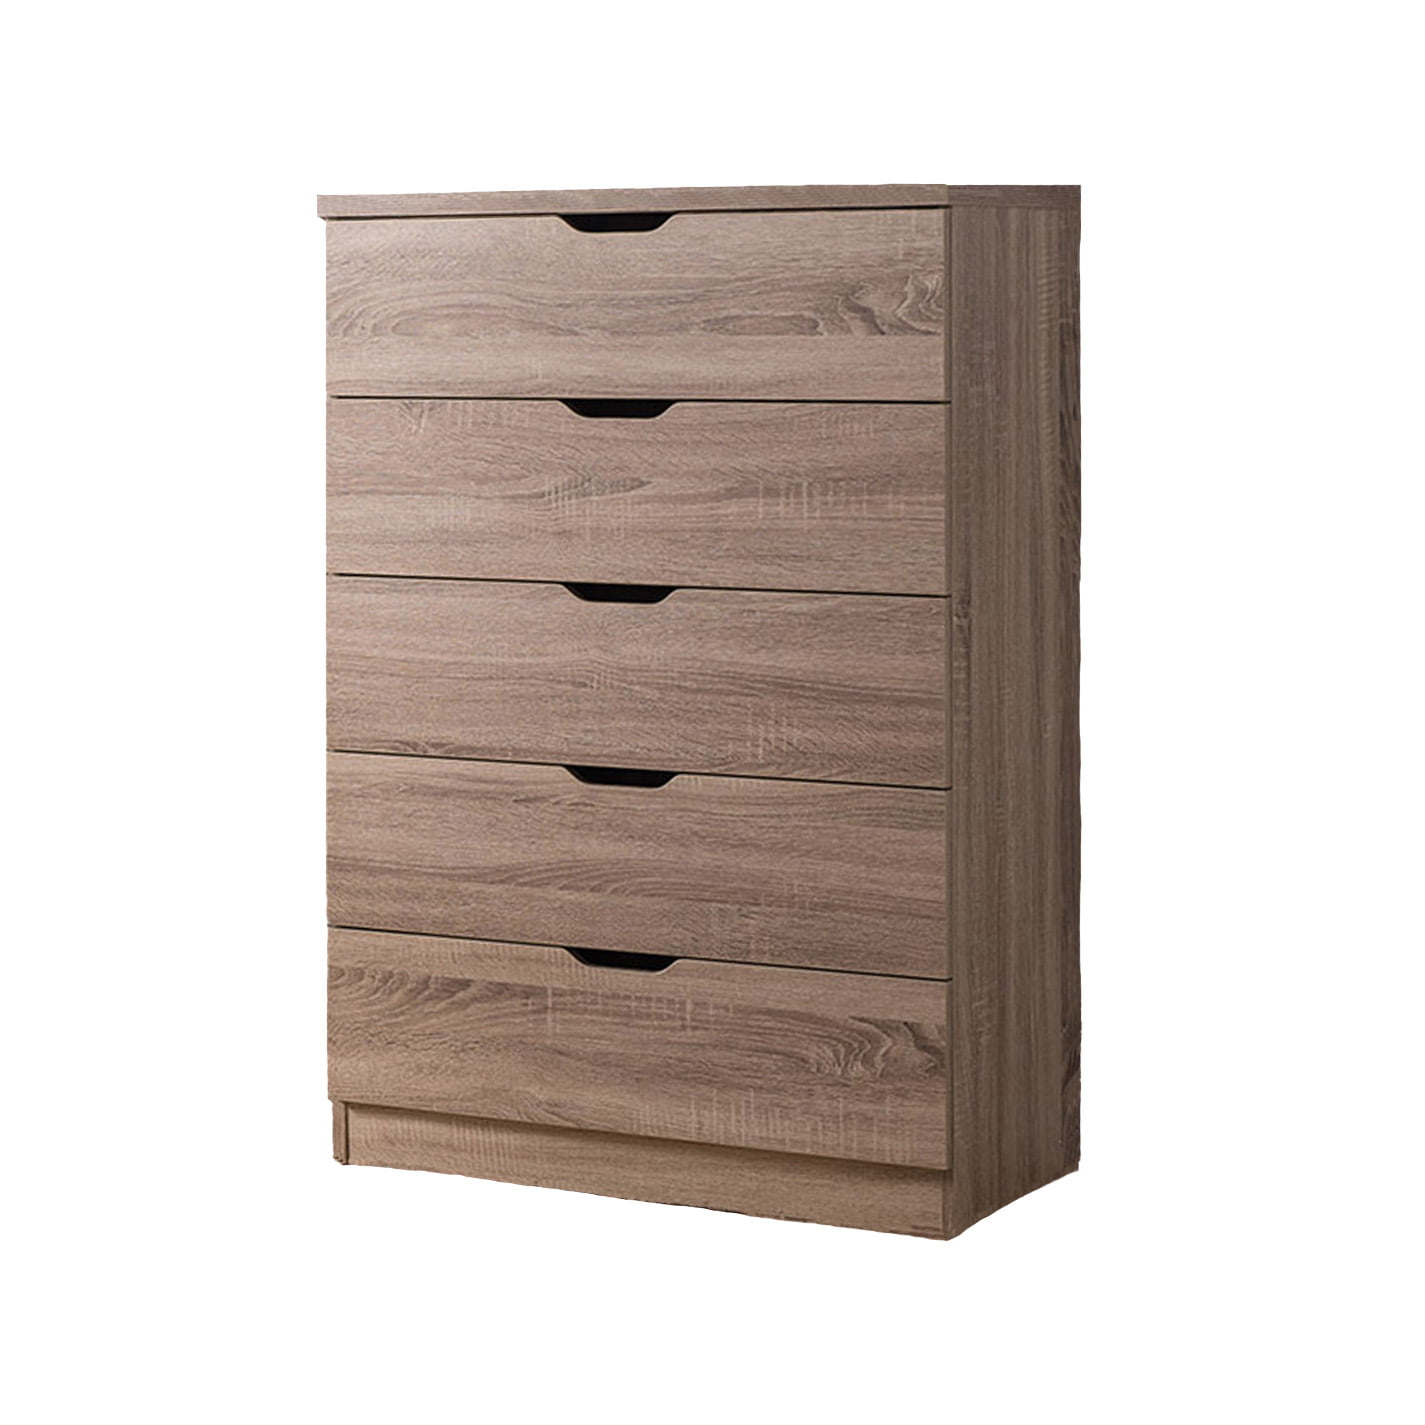 Smart Home Eltra K Series Closet Storage Organizer 3 4 5 Drawers Chest Dresser 